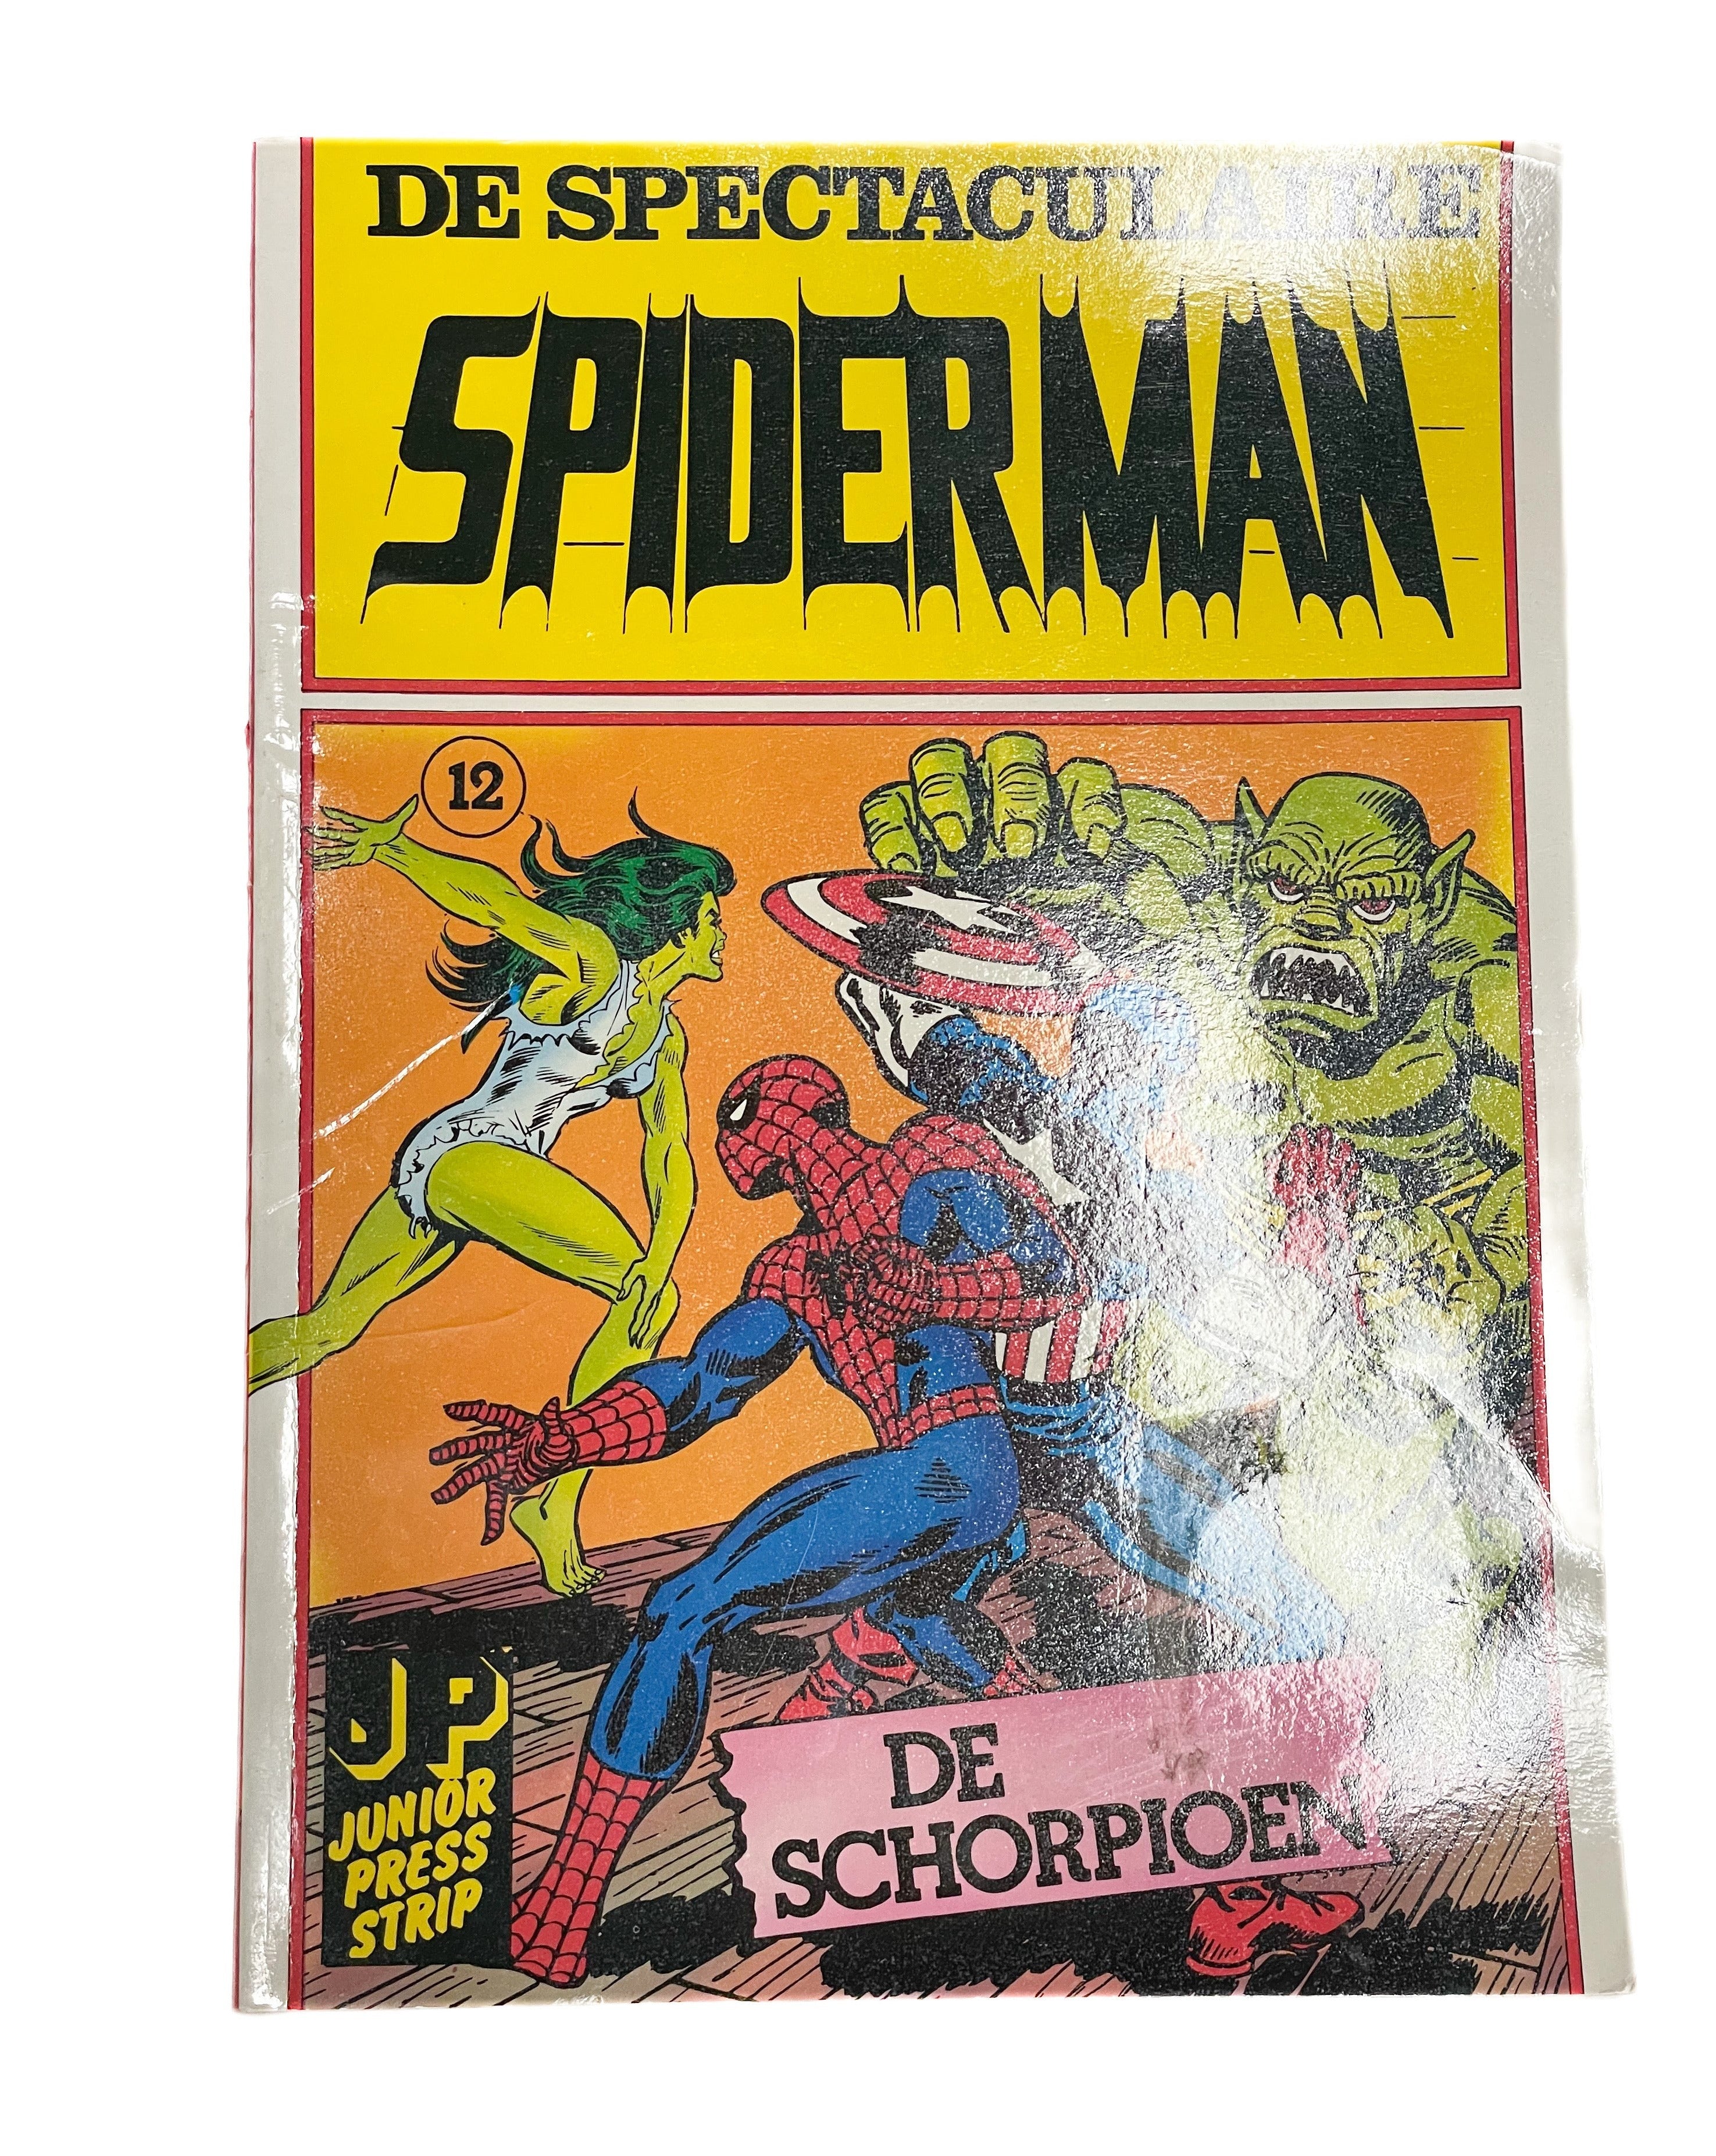 De Spectaculaire Spiderman- De schorpioen nummer 12